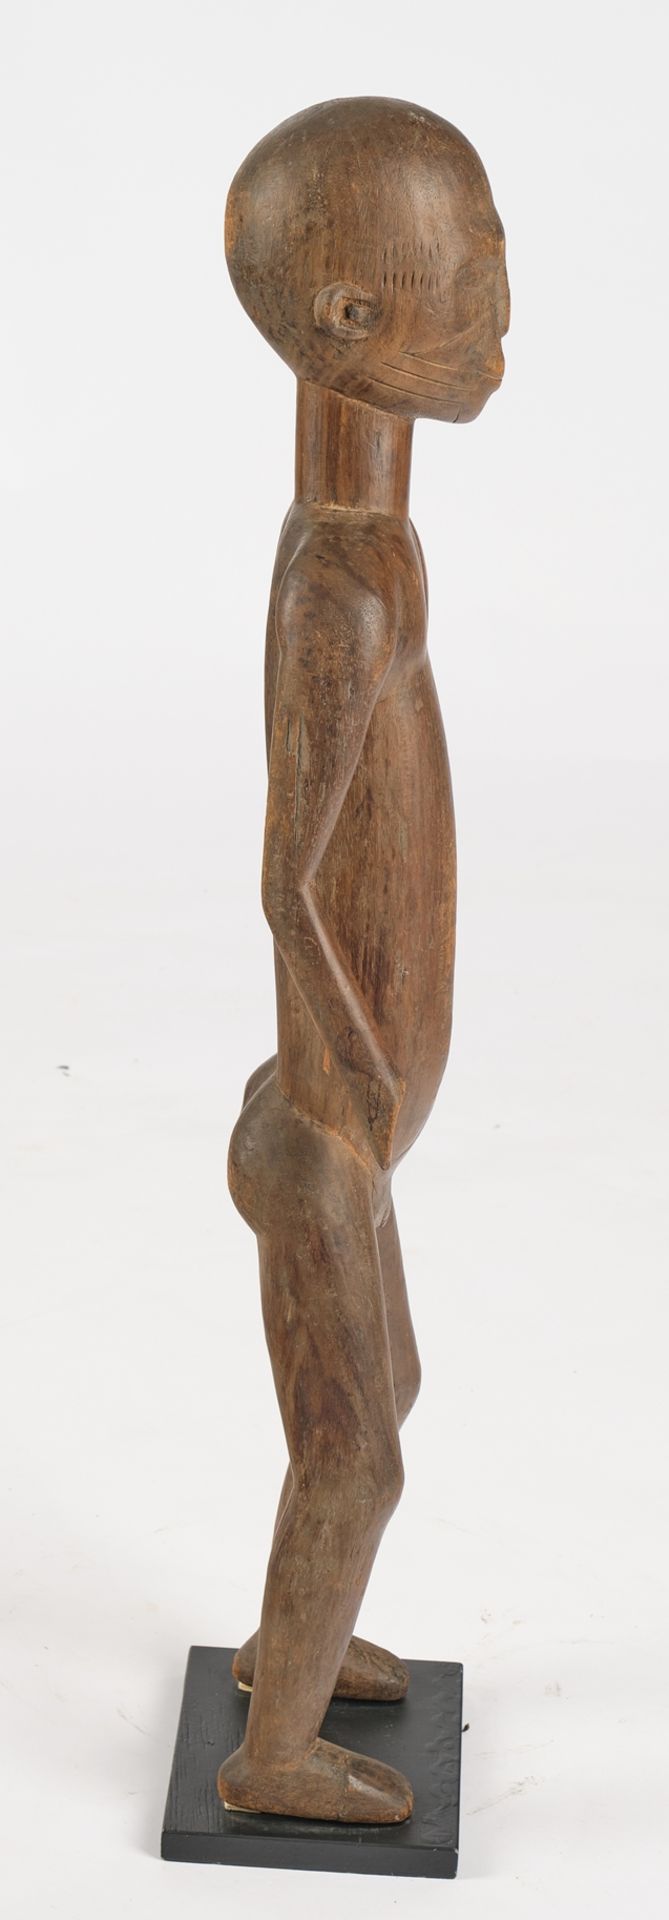 Figur, männlich, Mossi, Burkina Faso, Afrika, Holz, 86.5 cm hoch, gesockelt - Bild 4 aus 4